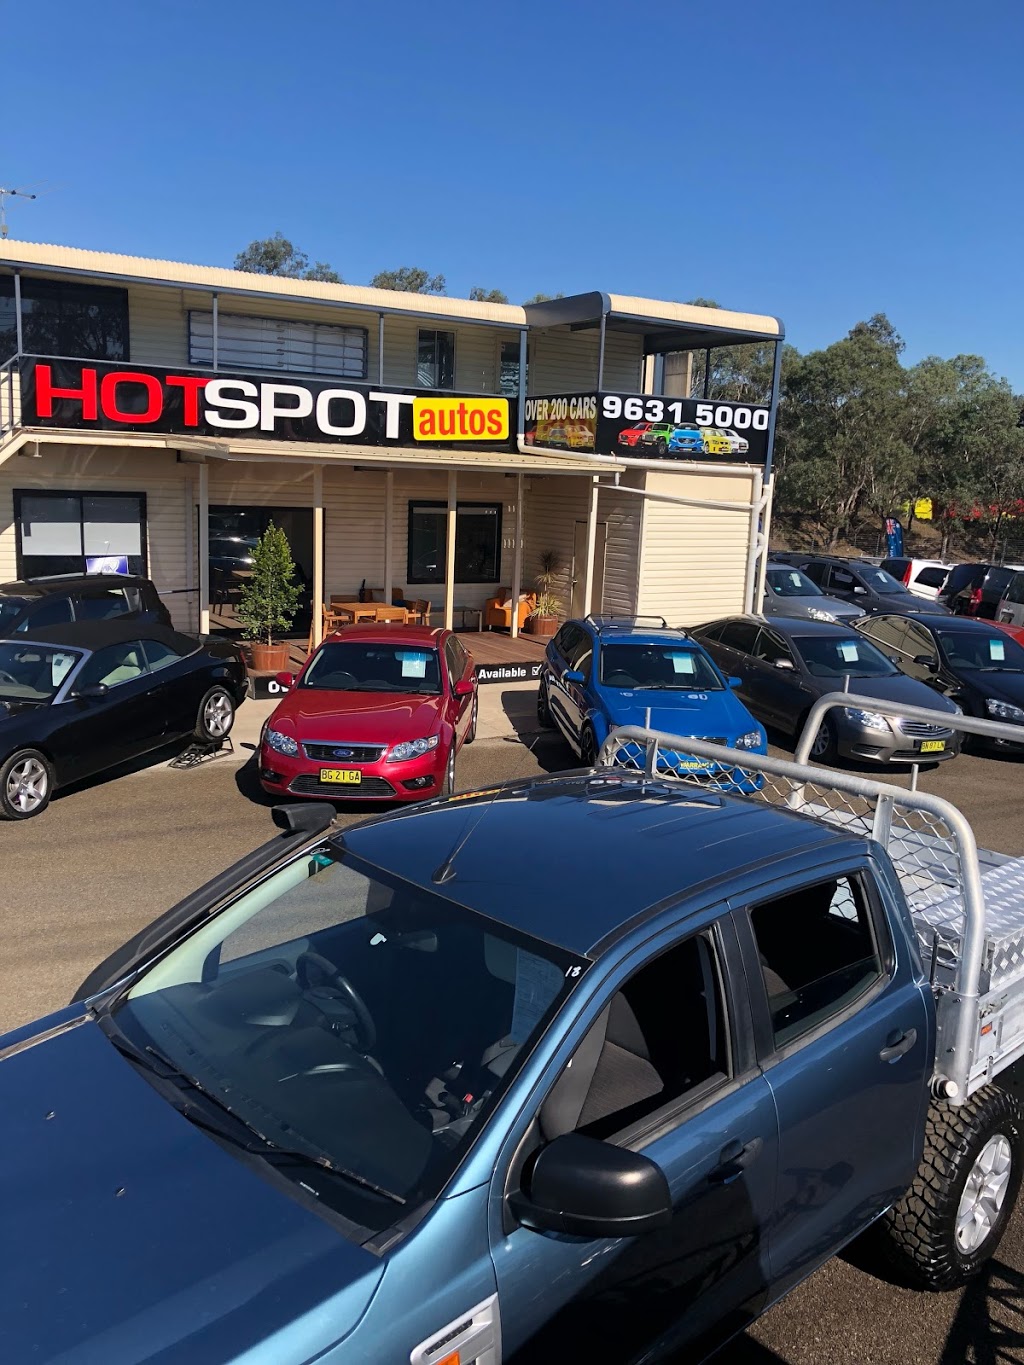 Hot Spot Autos Greystanes | car dealer | 607 Great Western Hwy, Greystanes NSW 2145, Australia | 0296315000 OR +61 2 9631 5000